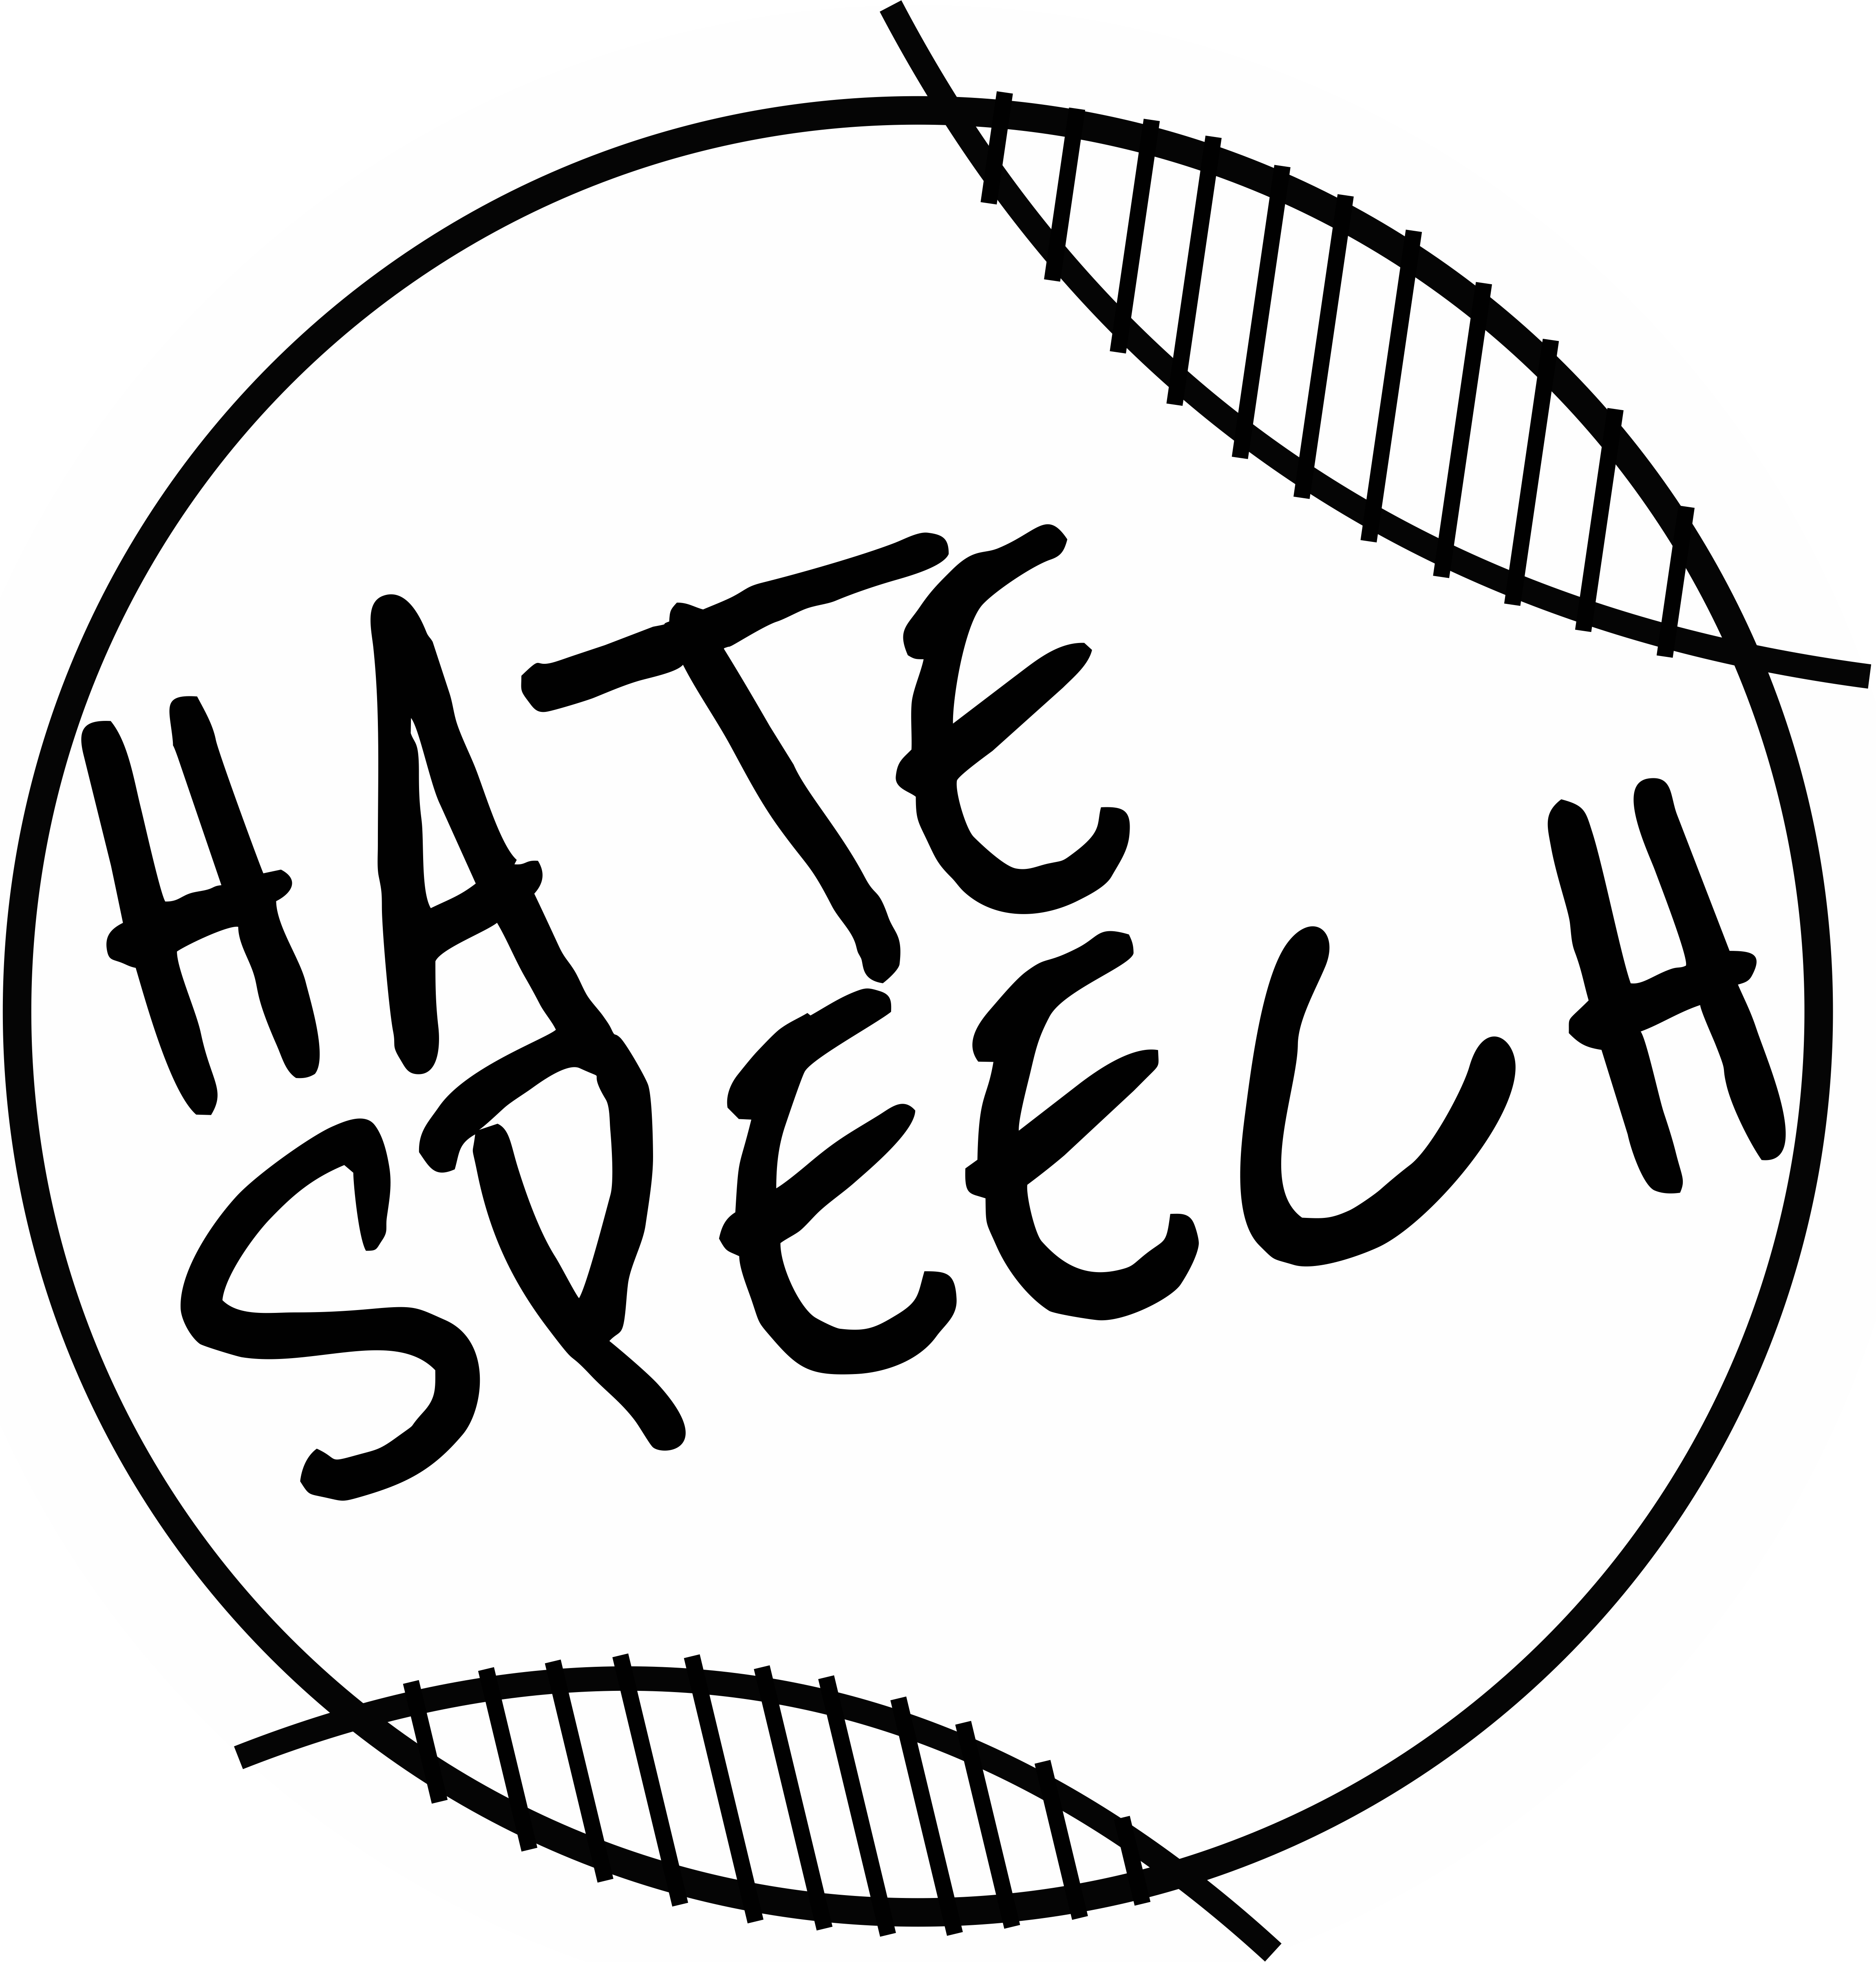 La educación frena el odio